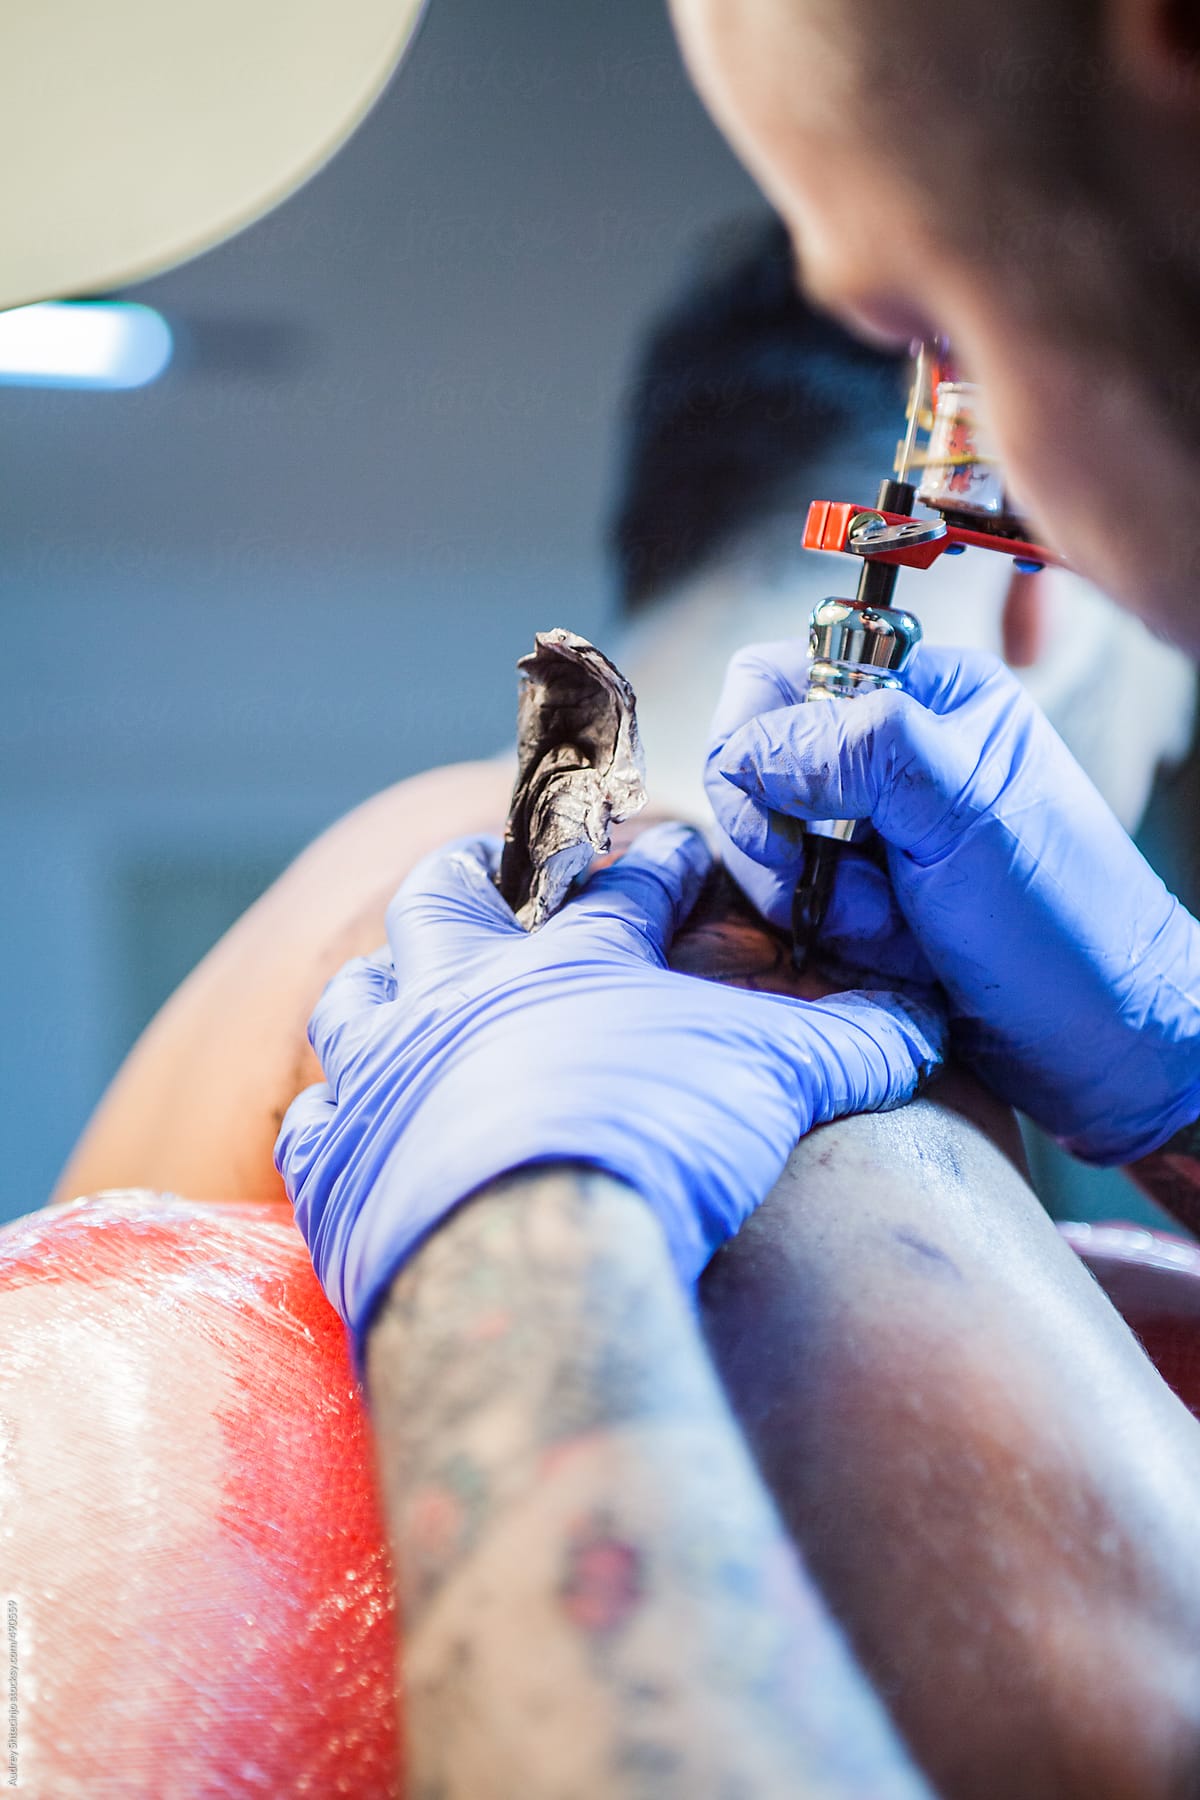 Tattoo artist inking on man\'s skin.